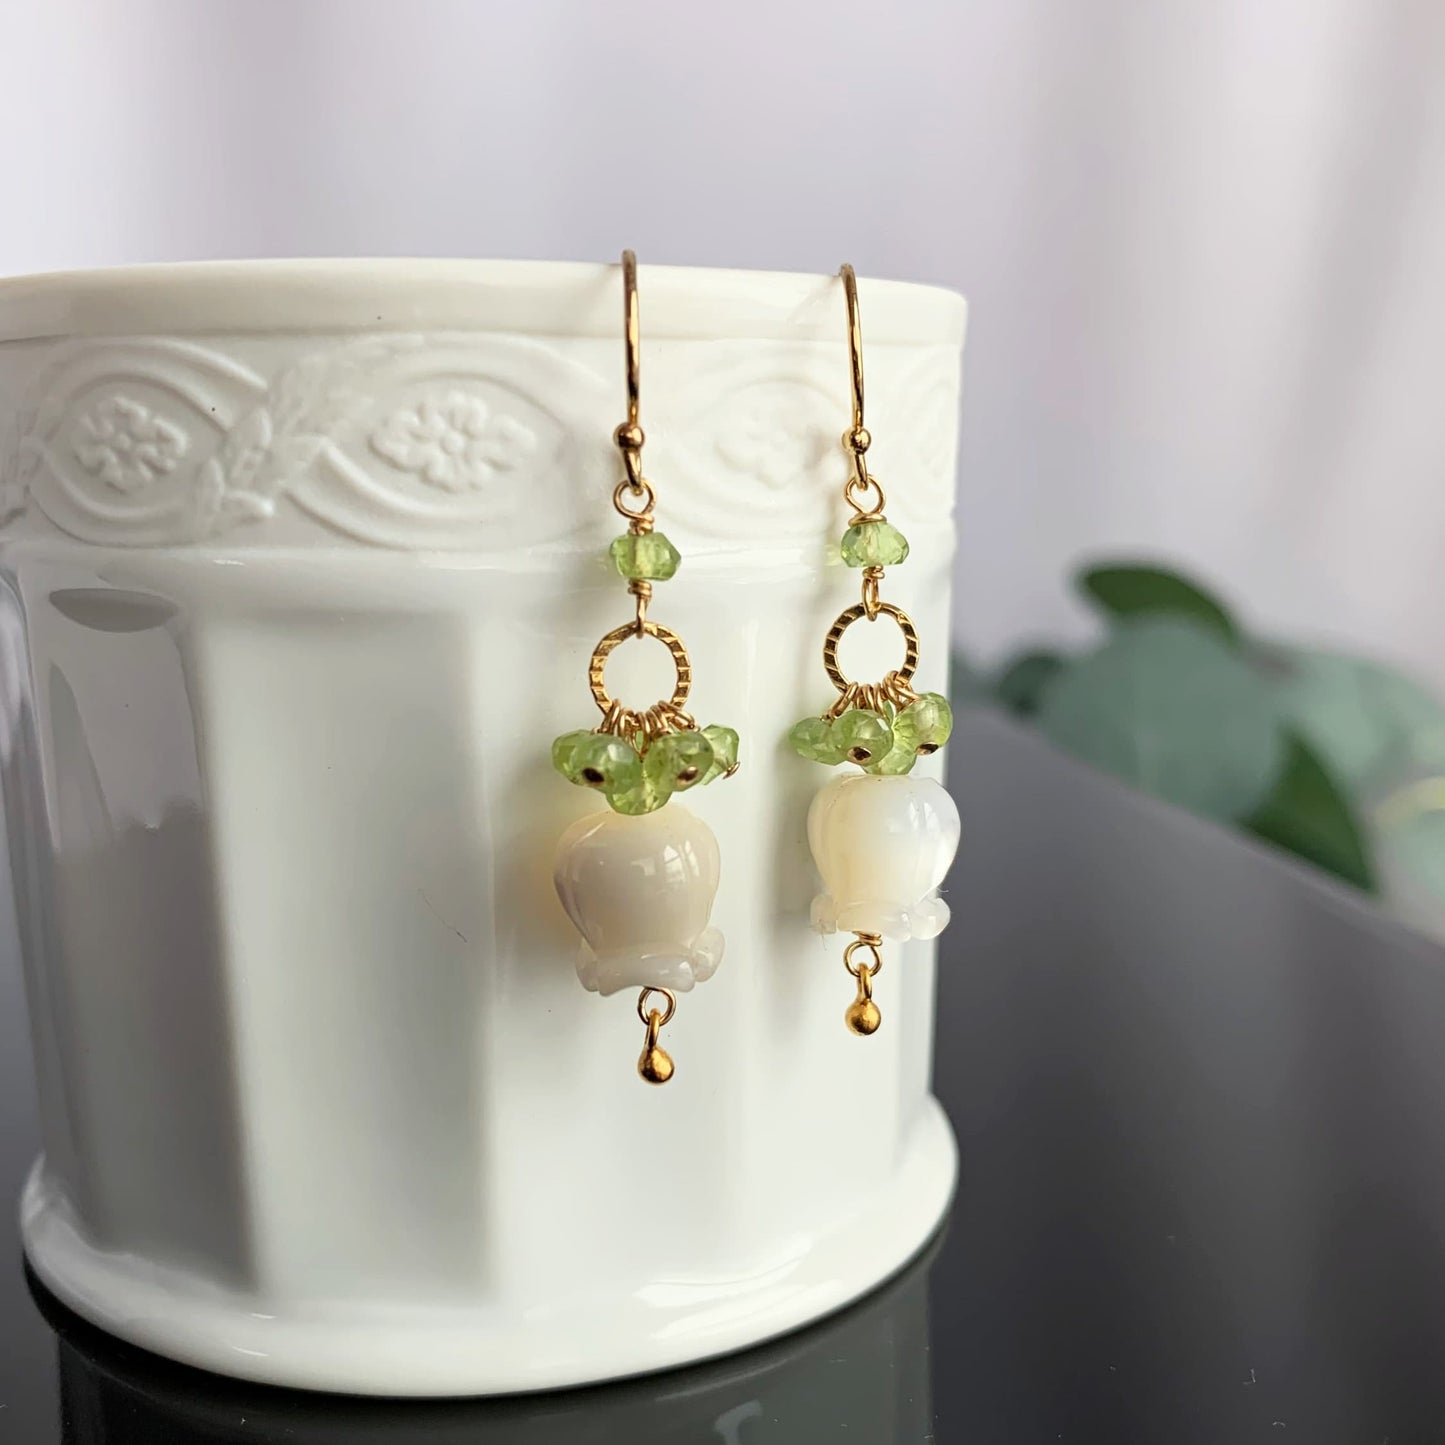 Flower Earrings Peridot Earrings Cluster Earrings White Earrings Dainty Earrings Gold Earrings  Gift for Her Gift for Mom Unique Gift